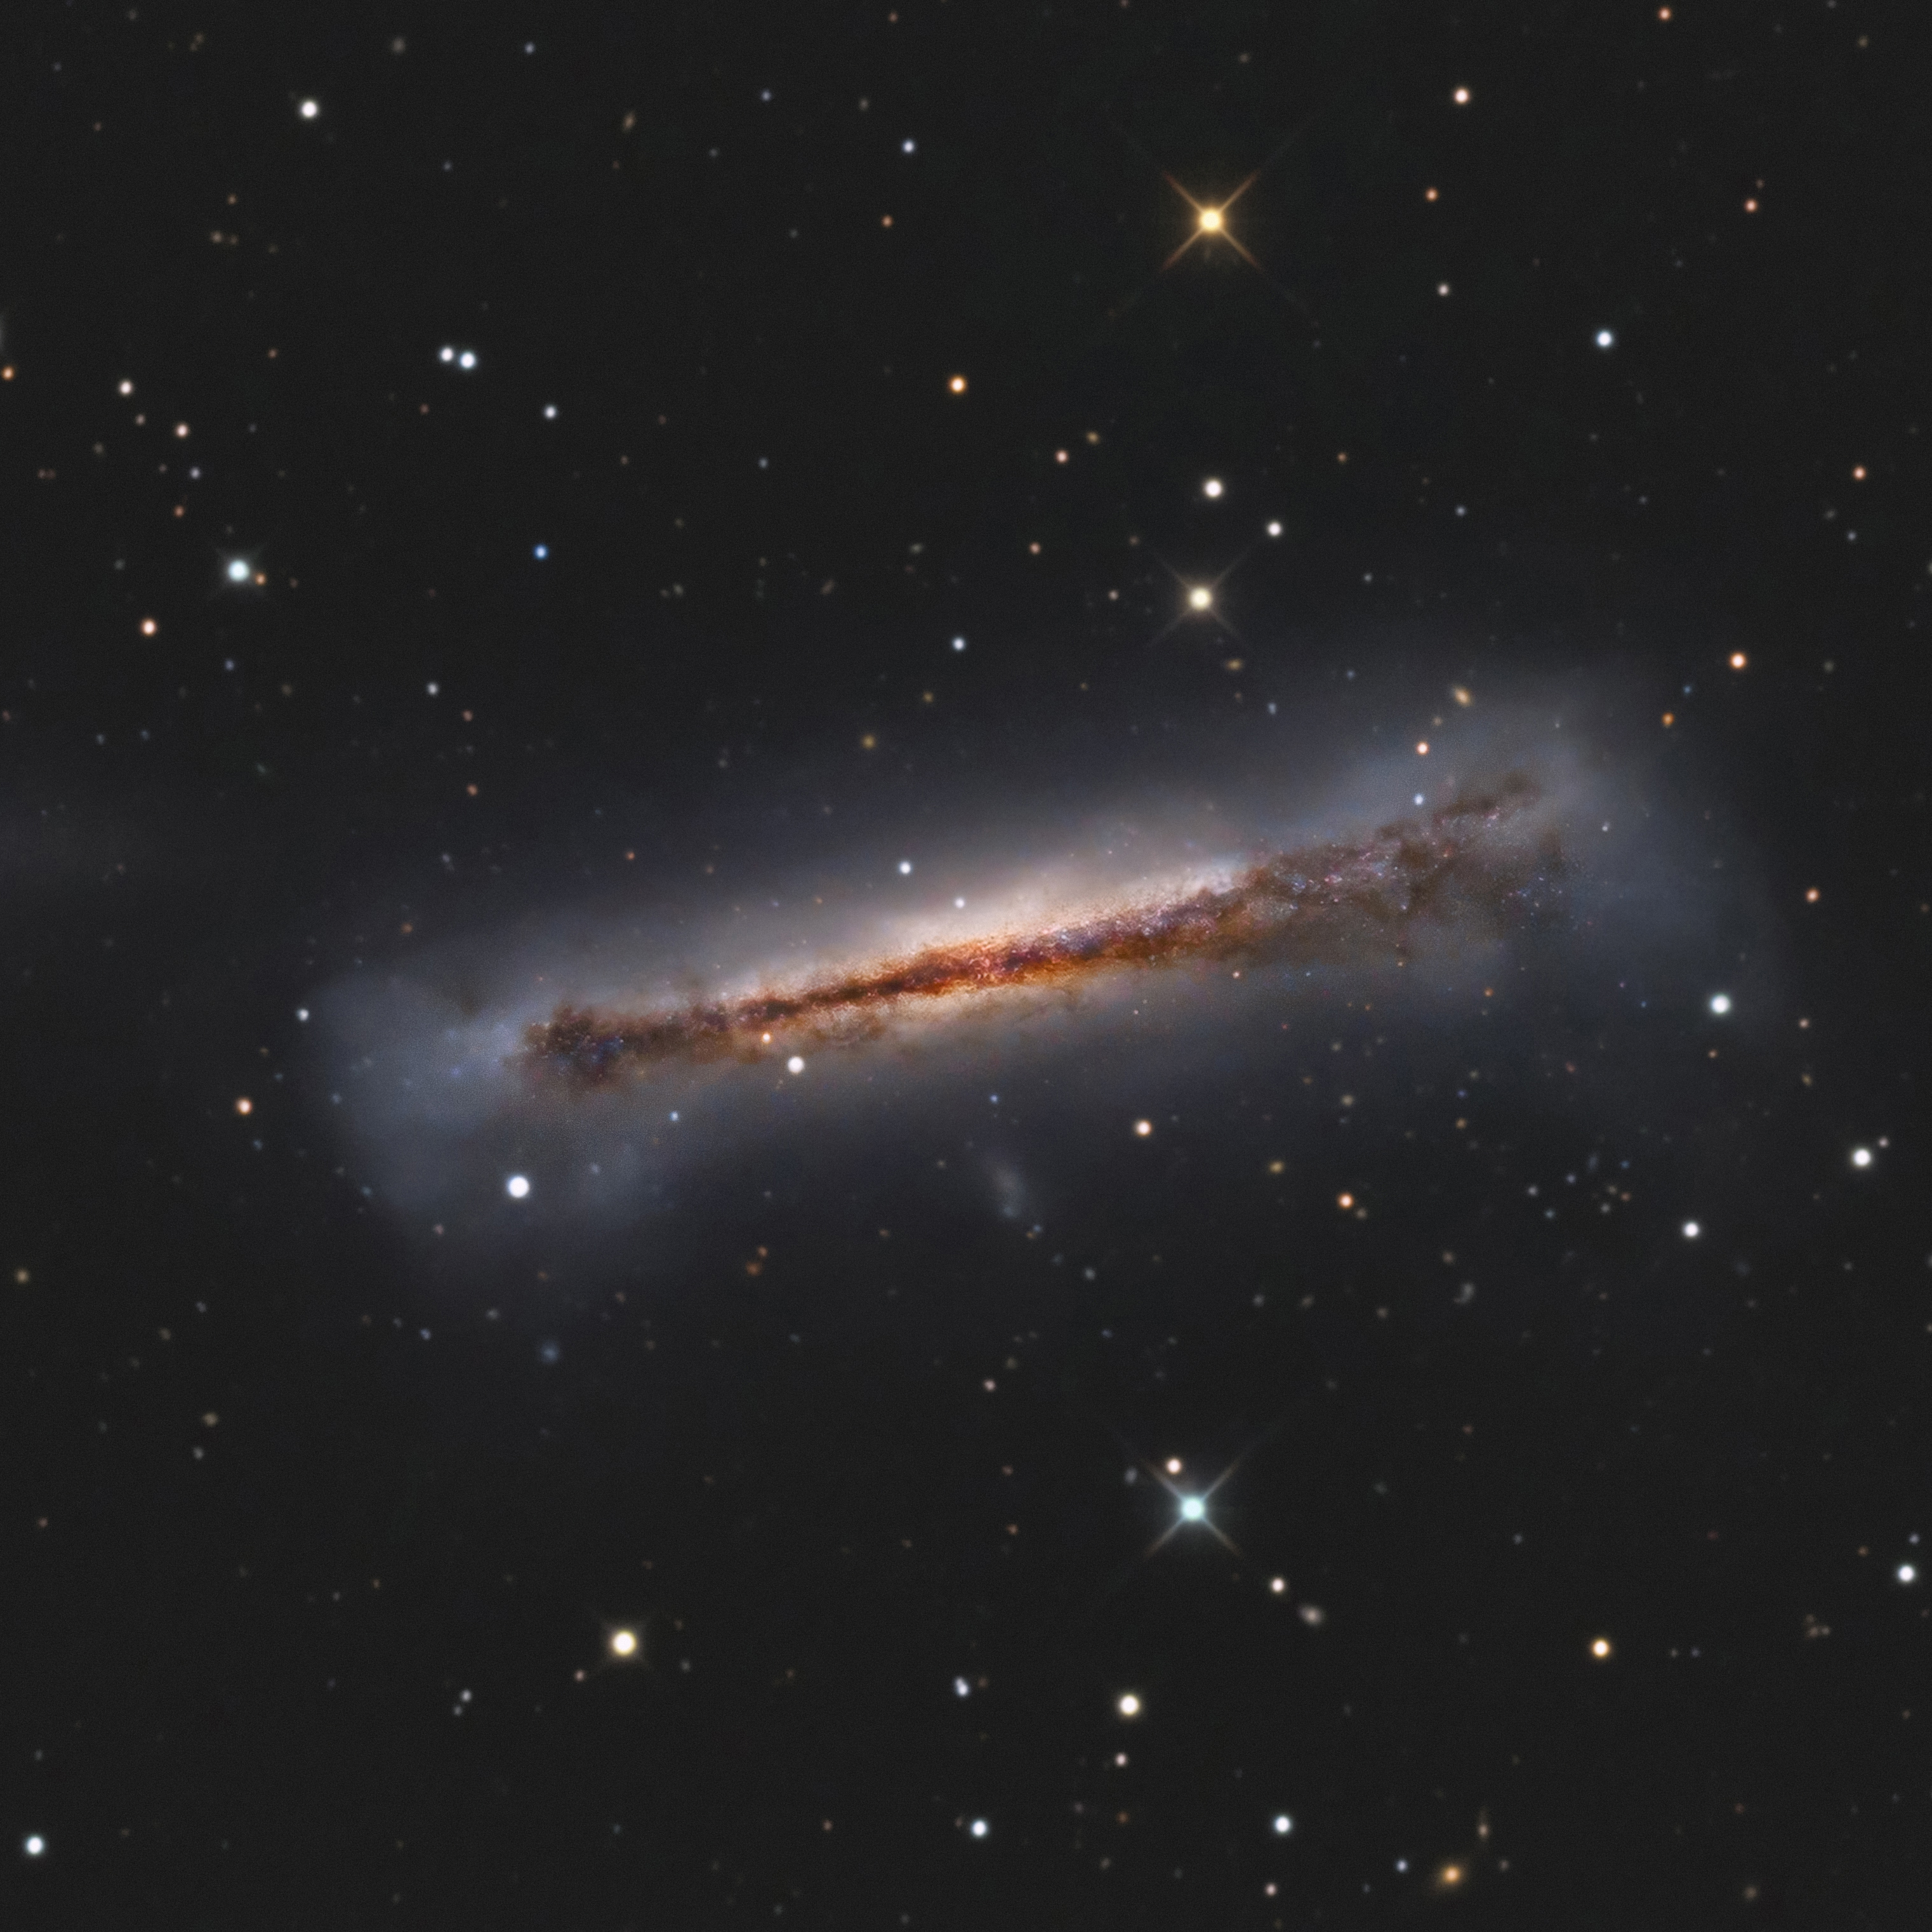 The Hamburger Galaxy - NGC 3628